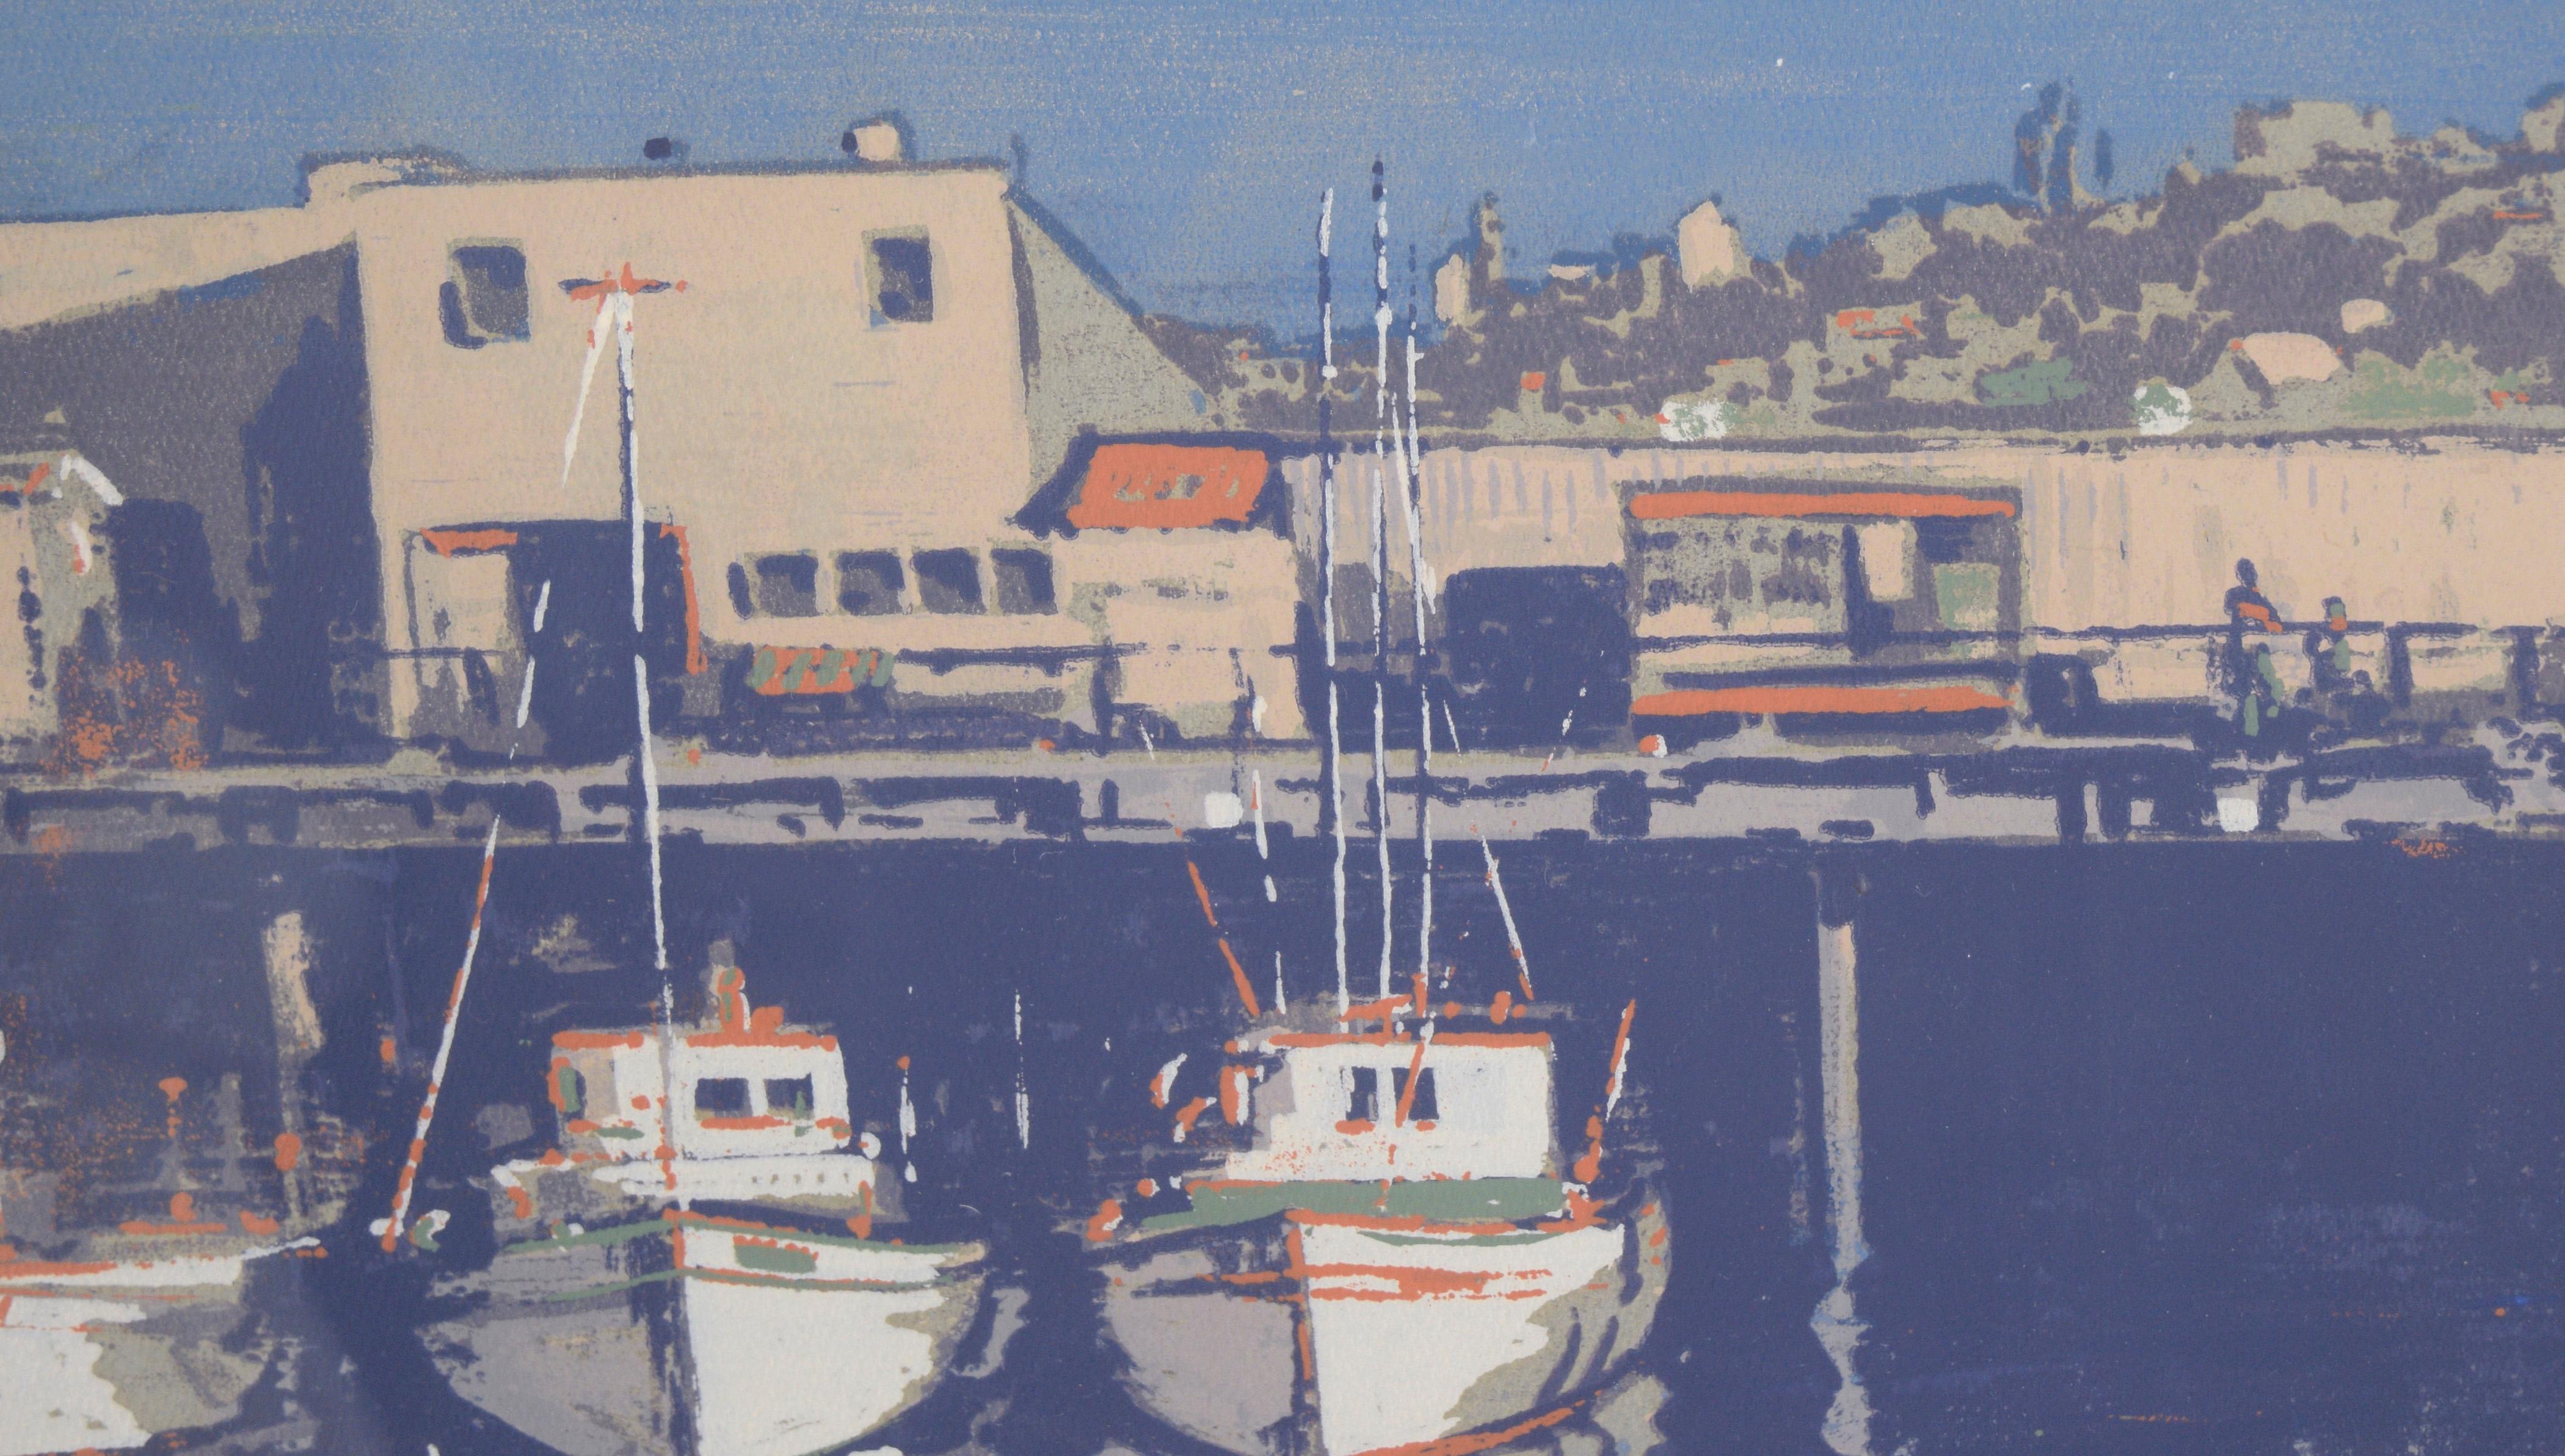 „Fisherman's Wharf – San Francisco“ Mehrschichtiger Raumteiler auf Papier – signiert

Seltener und gewagter Siebdruck (Silk Screen) von Fisherman's Wharf 1957 von Gordon Cope (Amerikaner, 1906-1999). Am Fisherman's Wharf liegen mehrere Boote vor